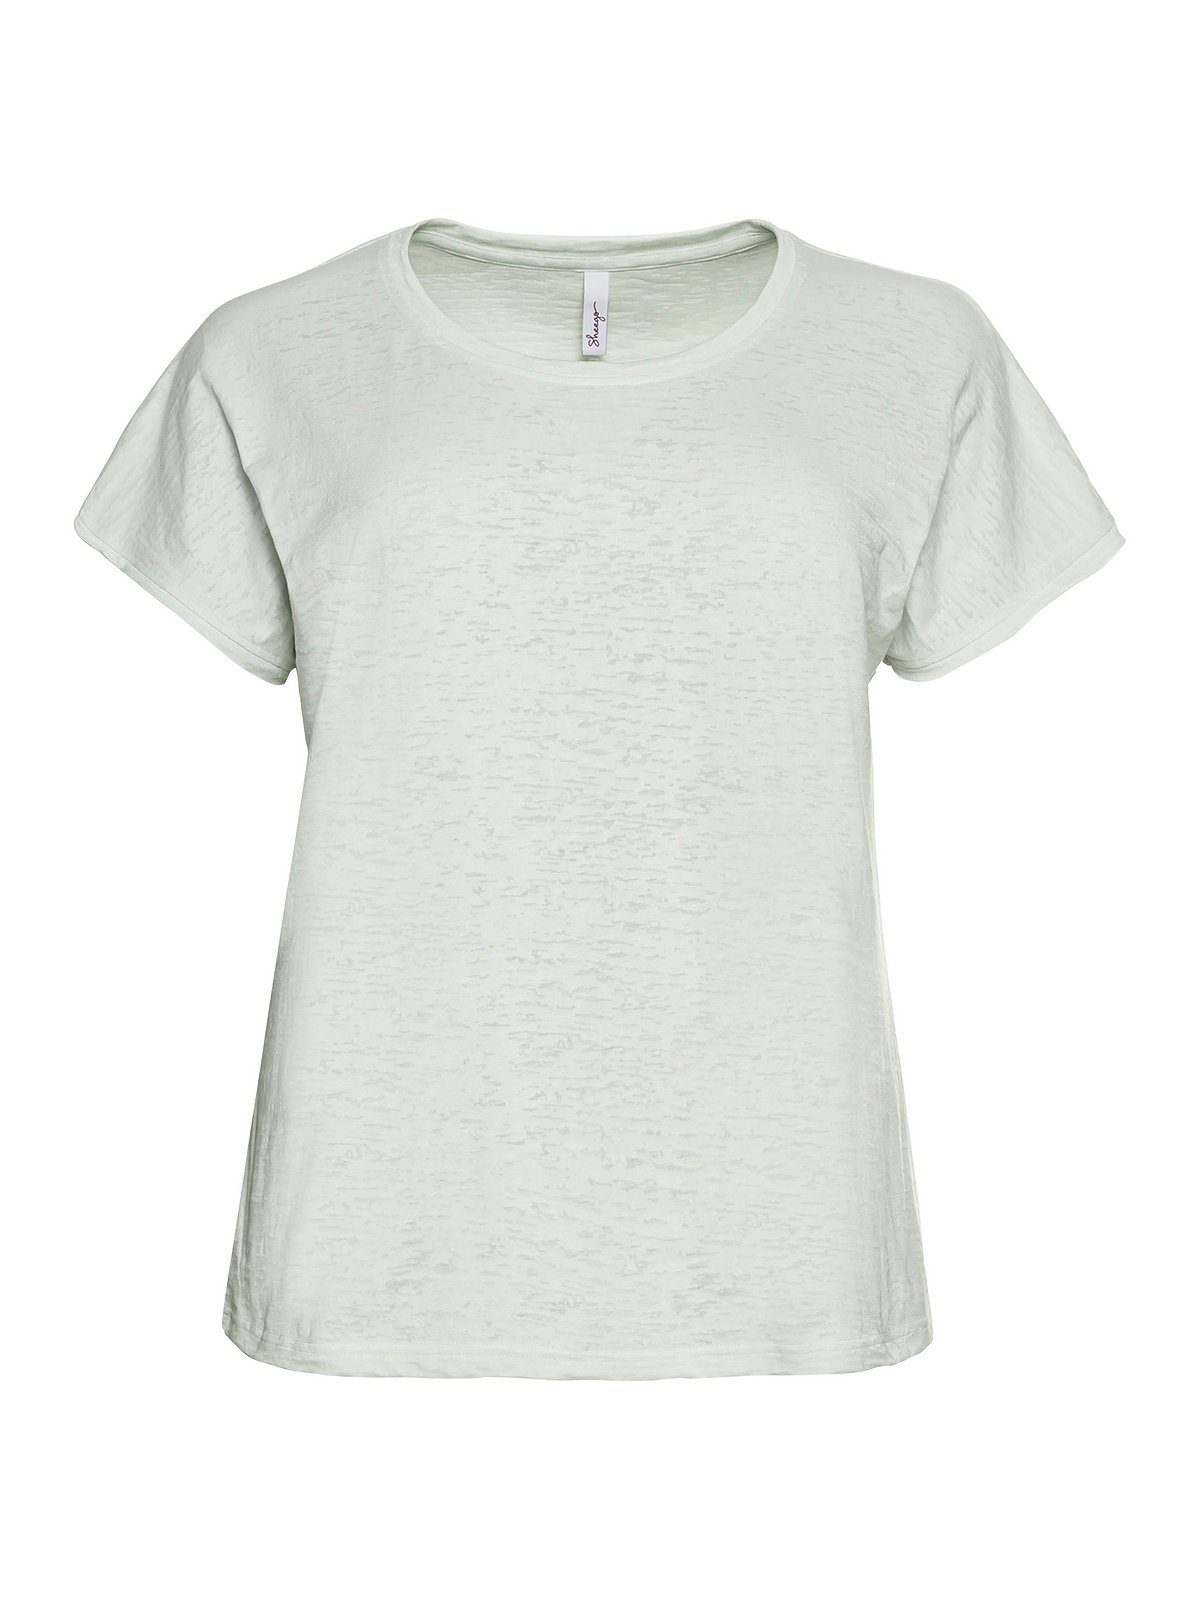 Sheego T-Shirt blassaqua Große Ausbrennermuster, mit transparent Größen leicht